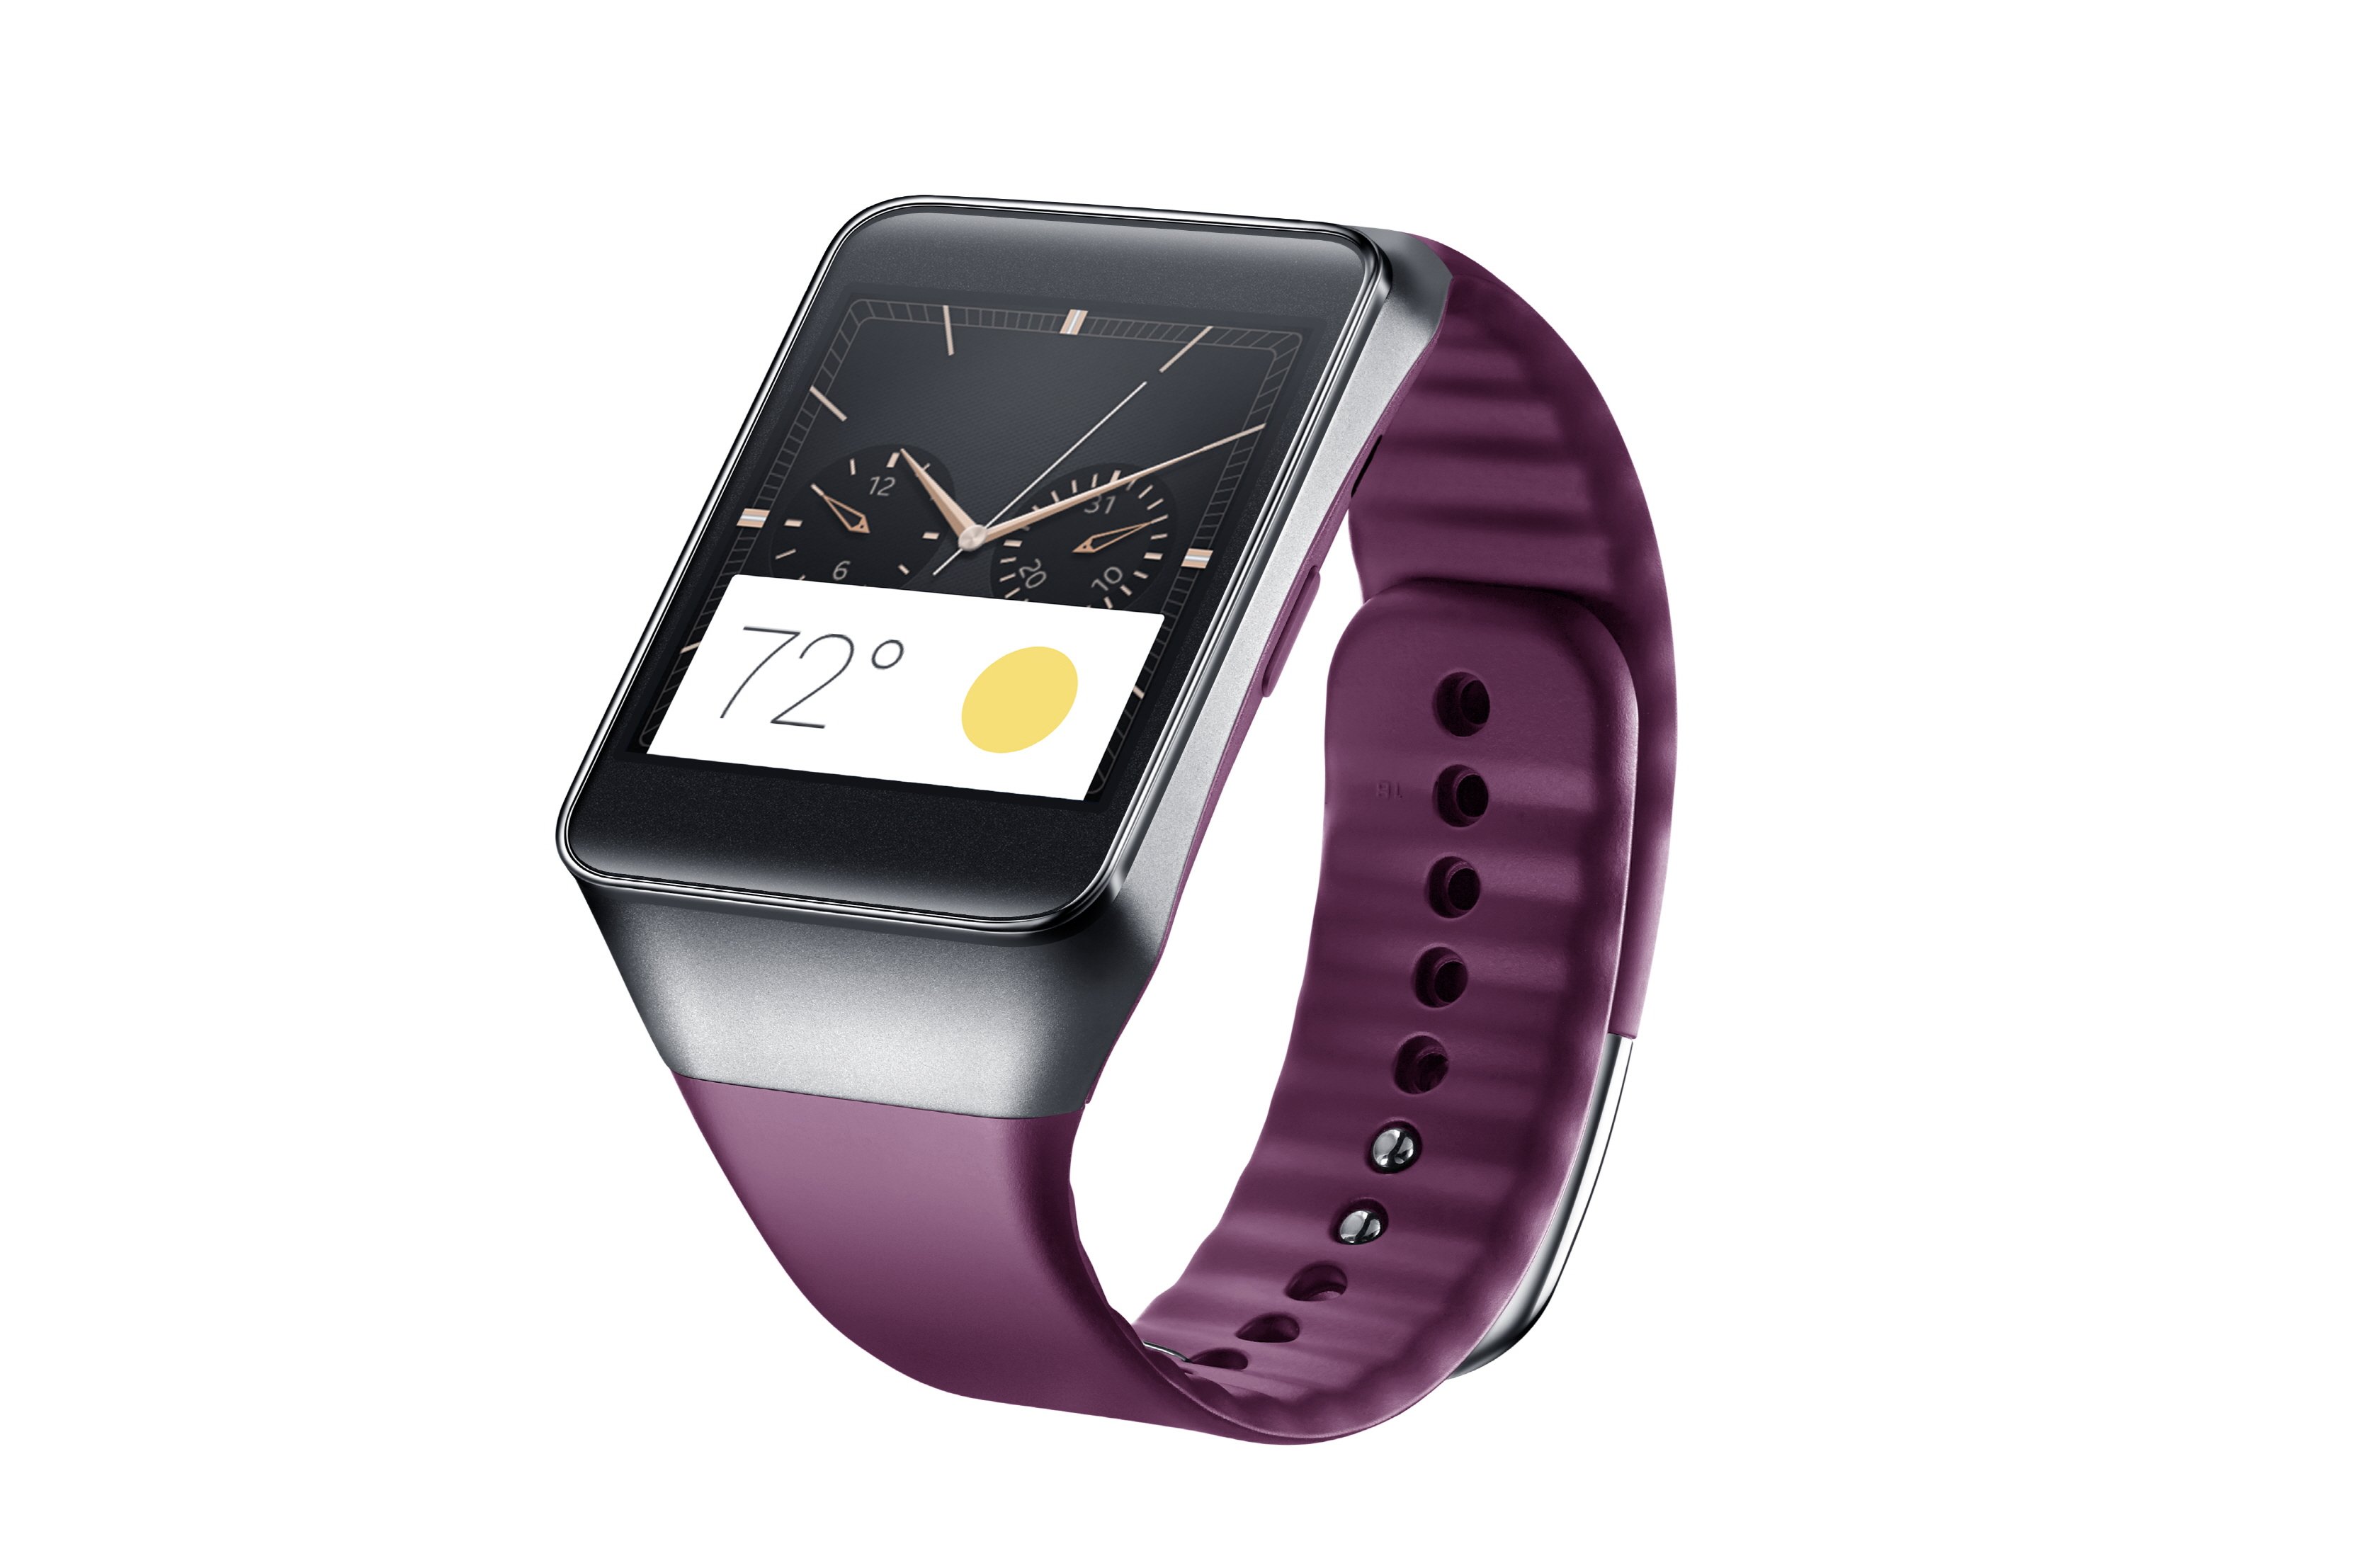 android wear: erste smartwatches und sdk in den nächsten tagen